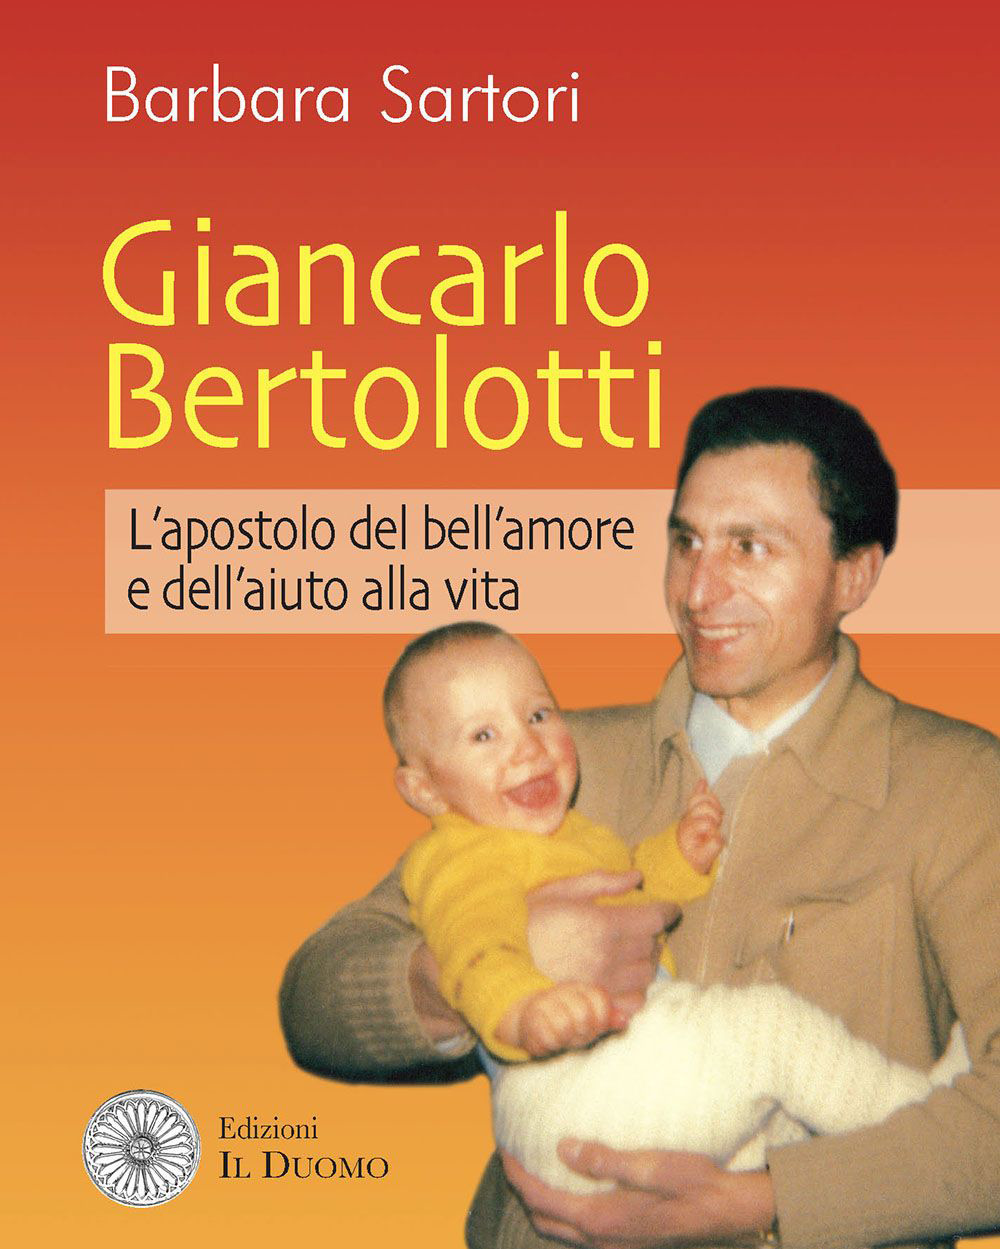 Giancarlo Bertolotti. L'apostolo del bell'amore e dell'aiuto alla vita